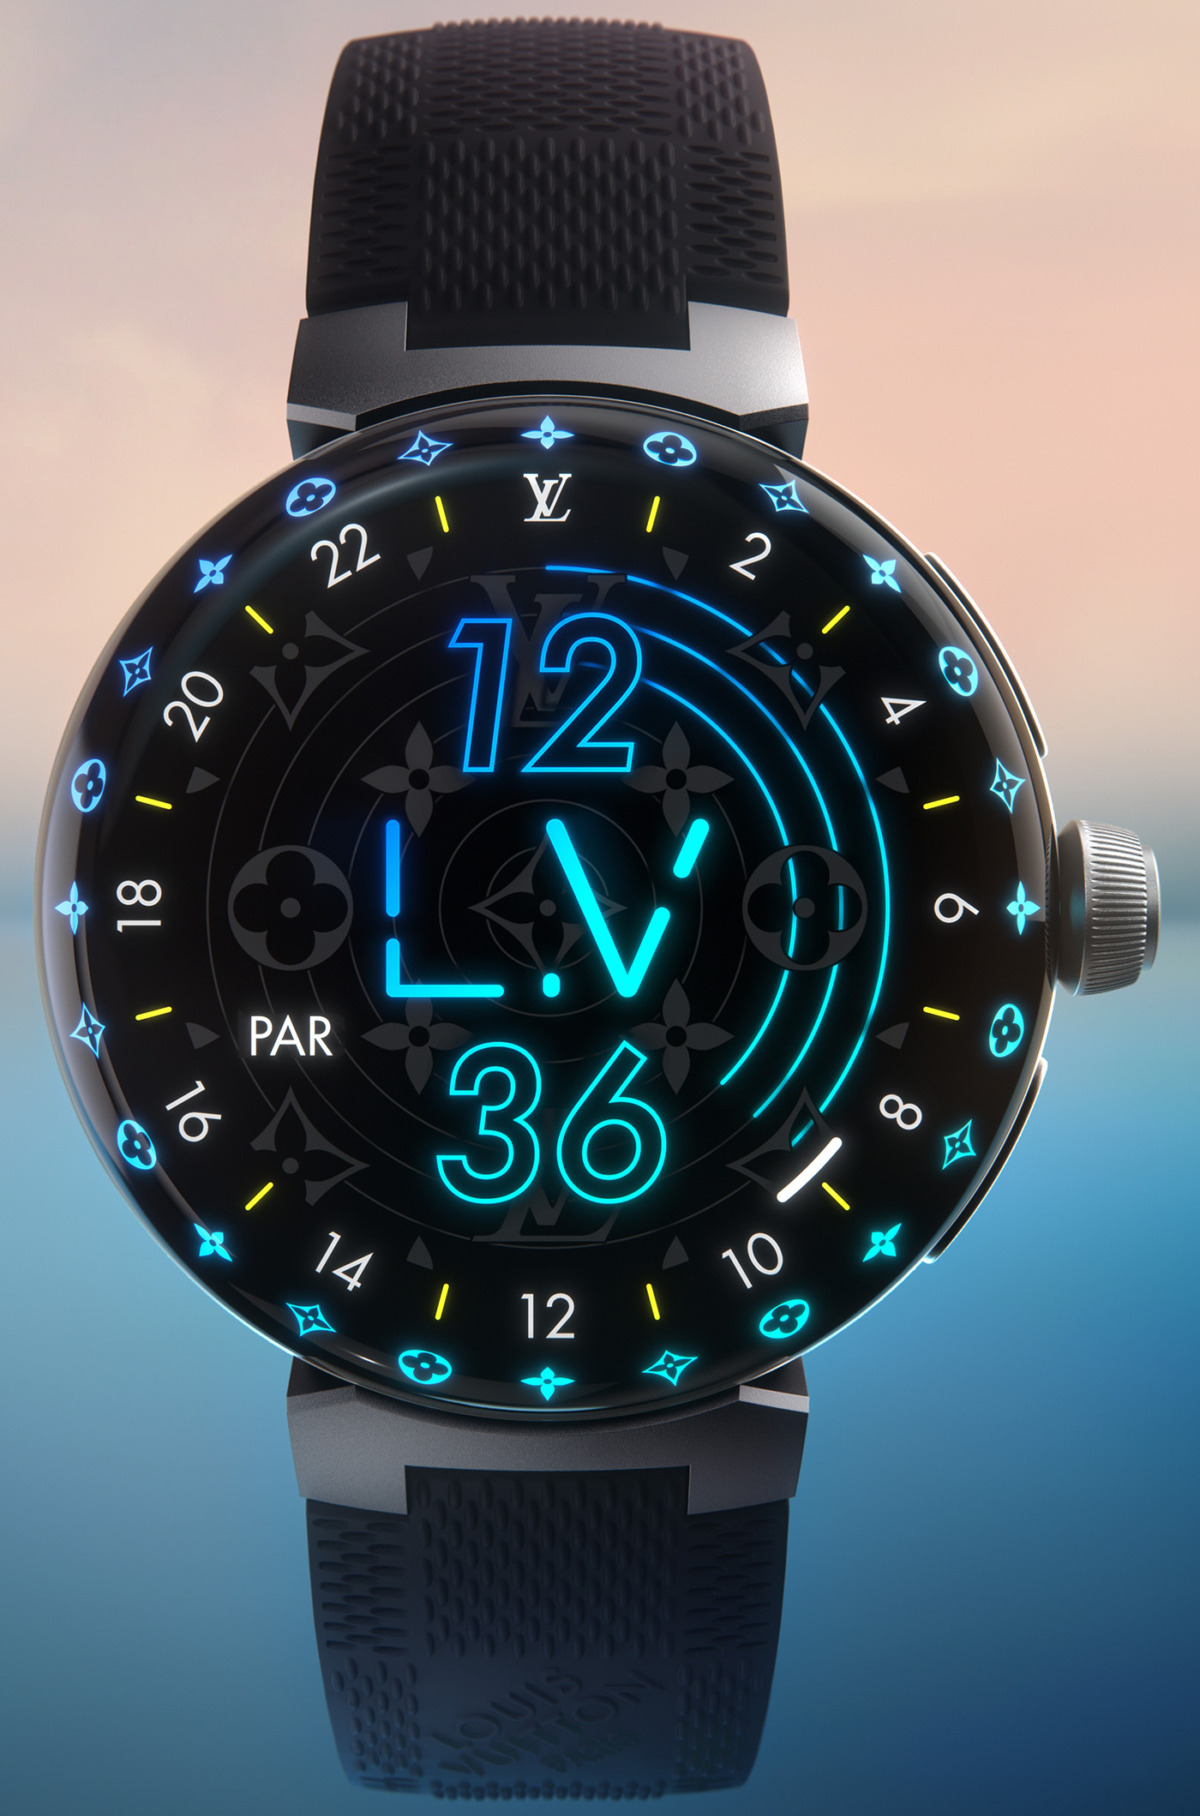 Louis Vuitton lance Tambour Horizon, sa première montre connectée